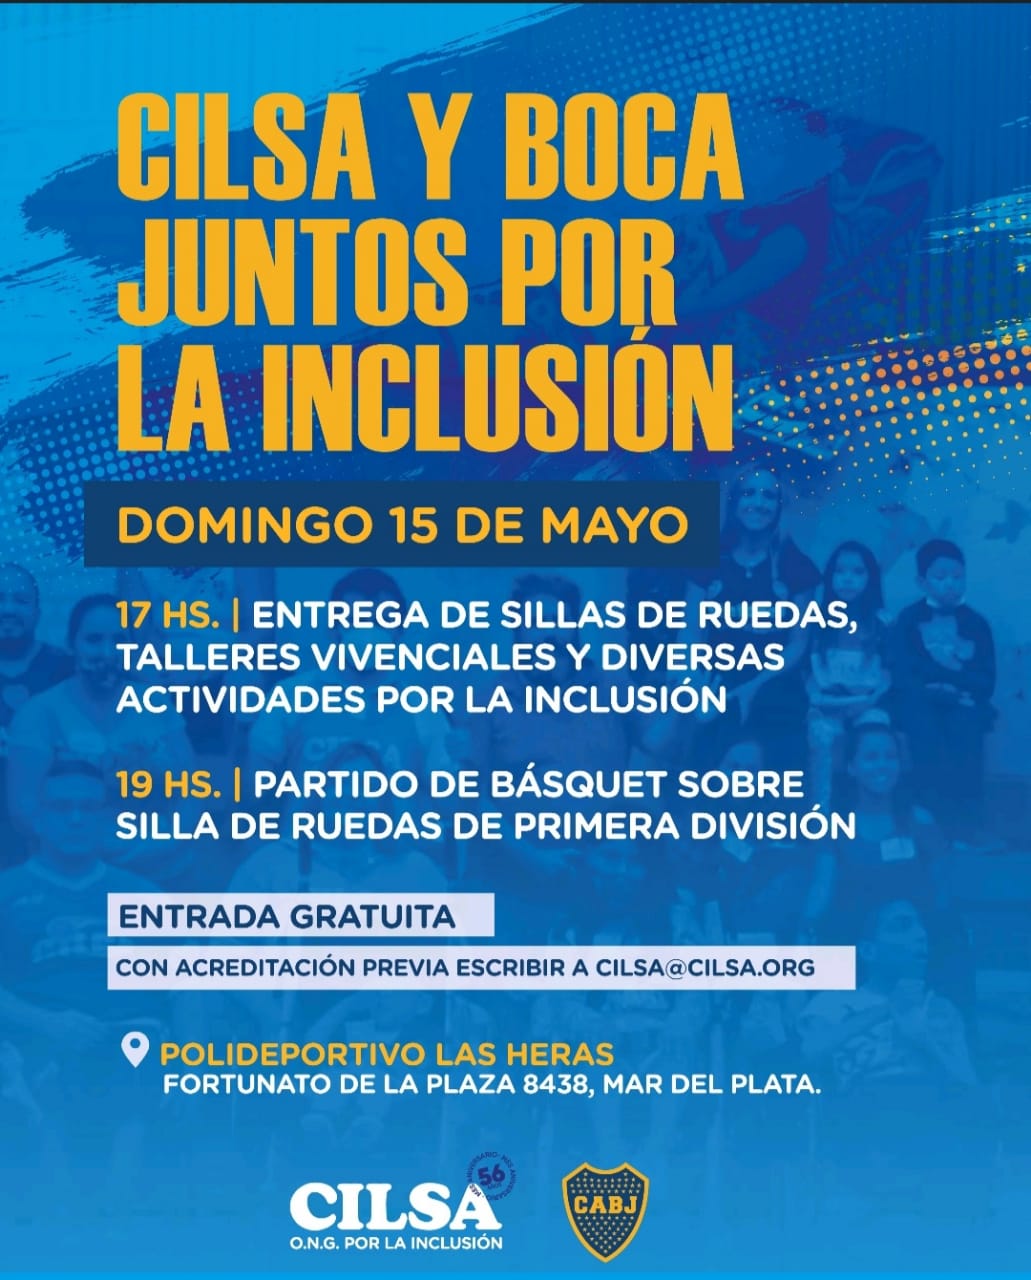 CILSA y Boca, "Juntos por la Inclusión" en Mar del Plata